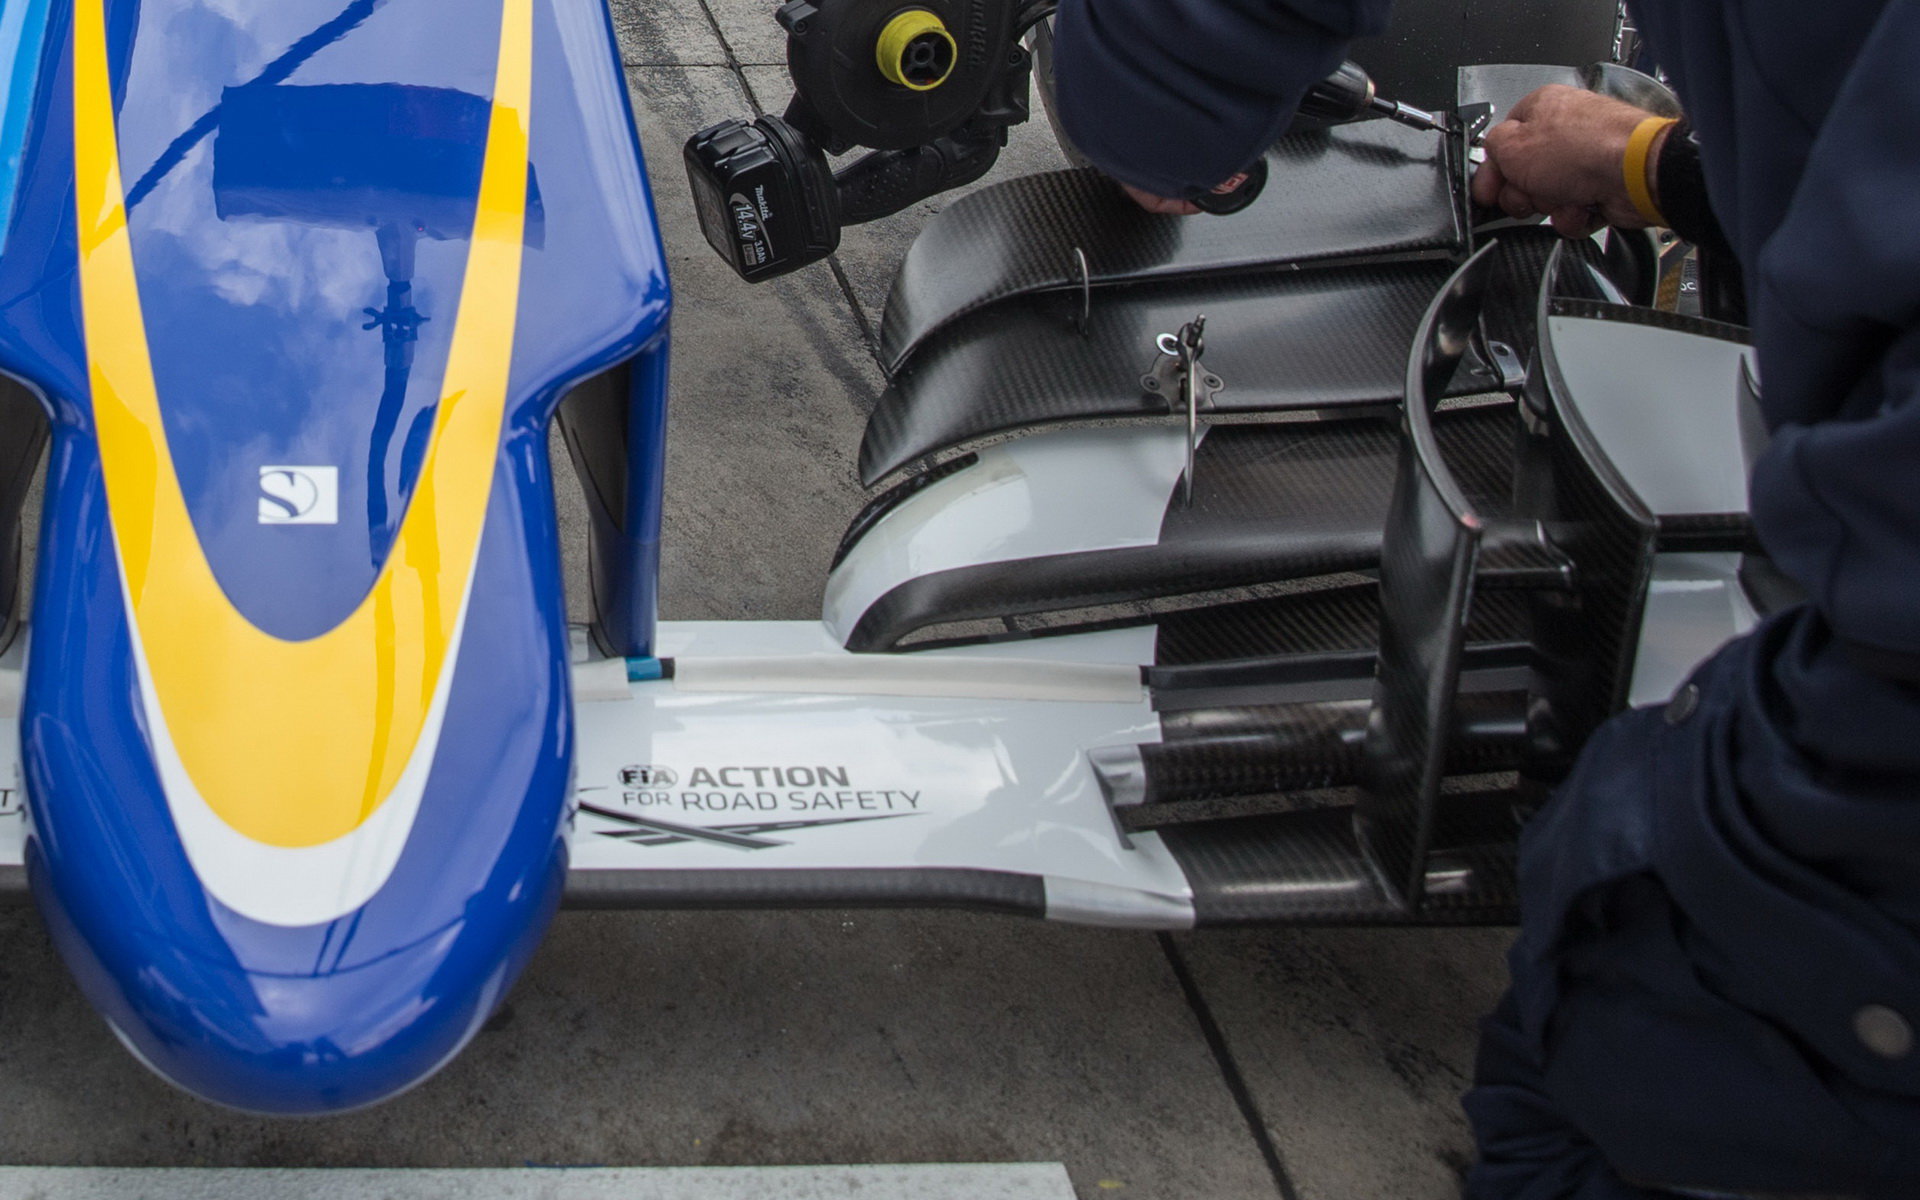 Detail předního křídla vozu Sauber C34 - Ferrari, GP Itálie (Monza)